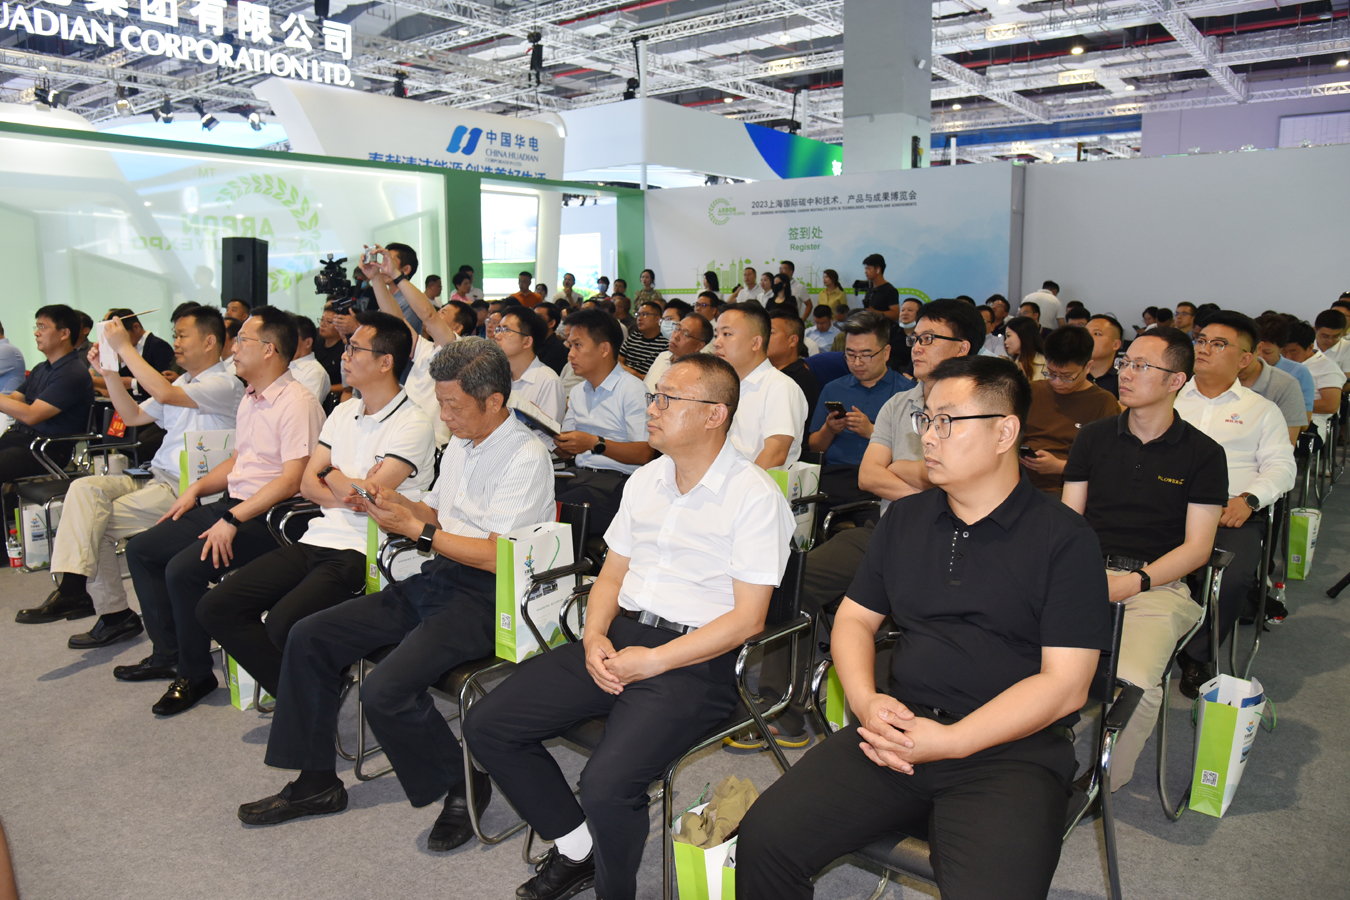 天蓬源帥亮相“上海國際碳博會”并舉行全球首發新品發布會